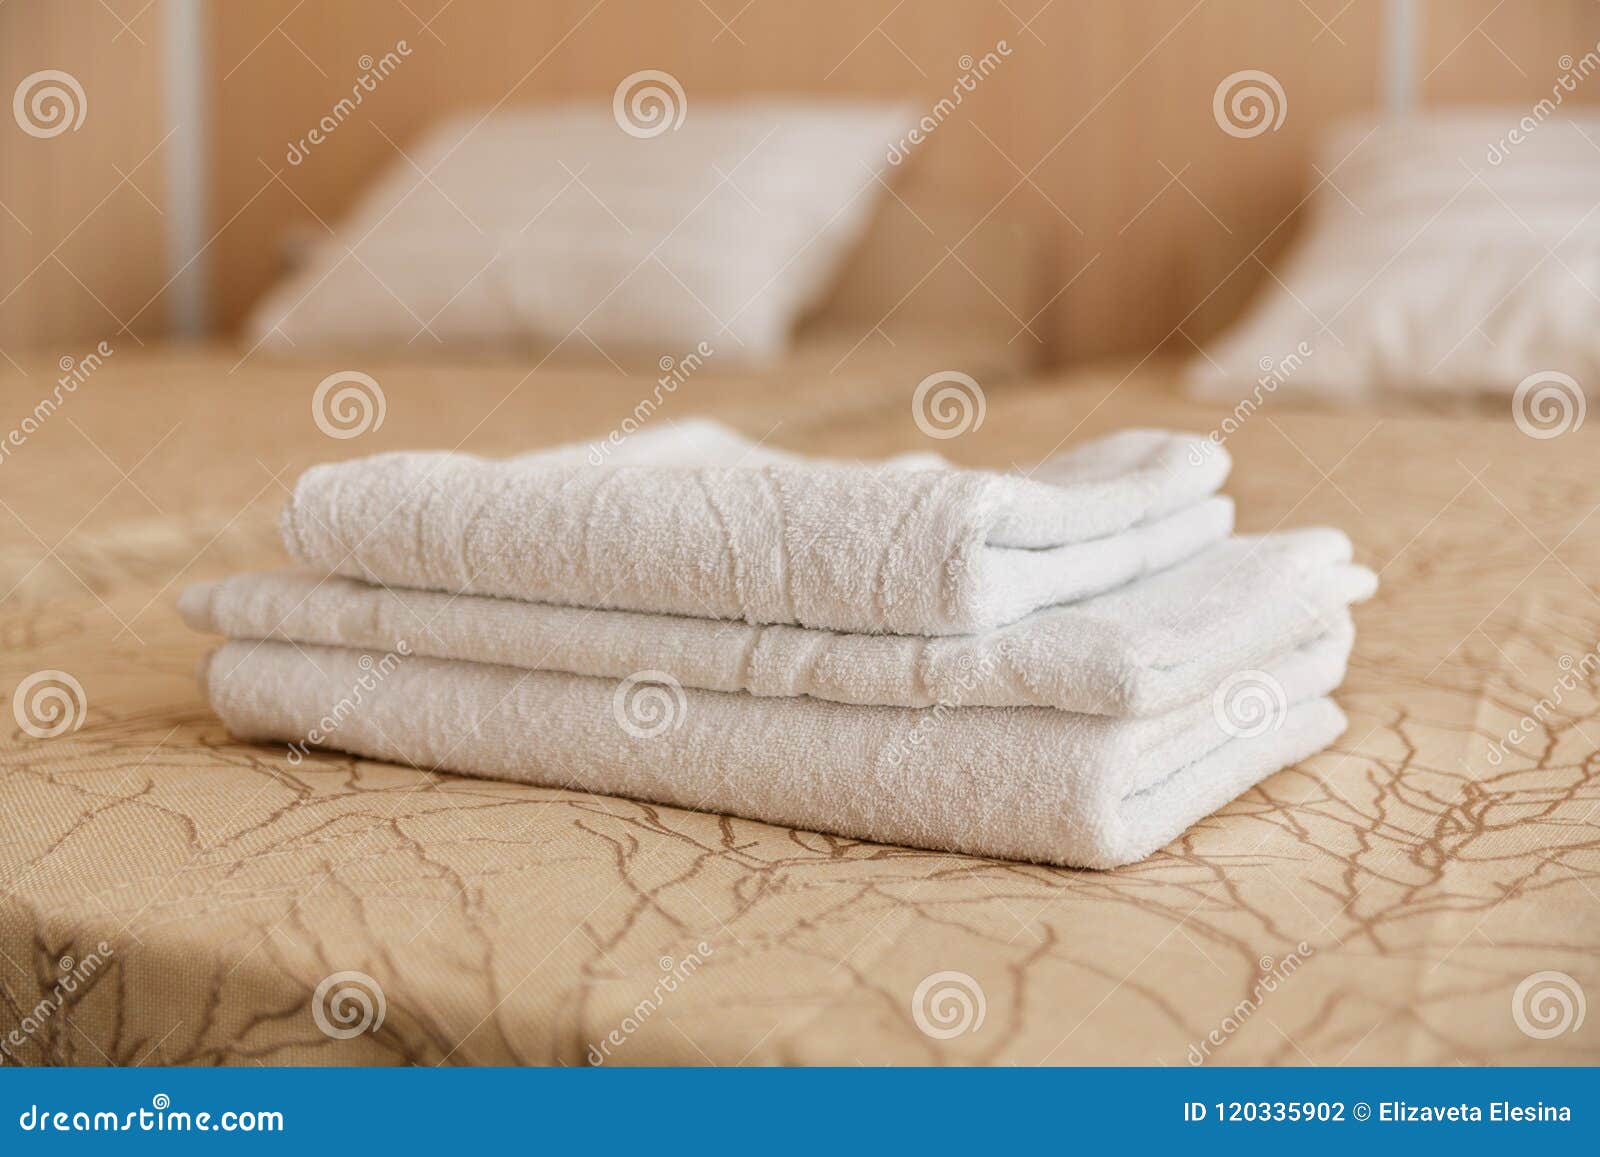 Полотенце на кровати. Полотенца на кровати в отеле. Полотенце отель кровать. Сложенные полотенца на кровати. Красиво сложенные полотенца в гостинице.